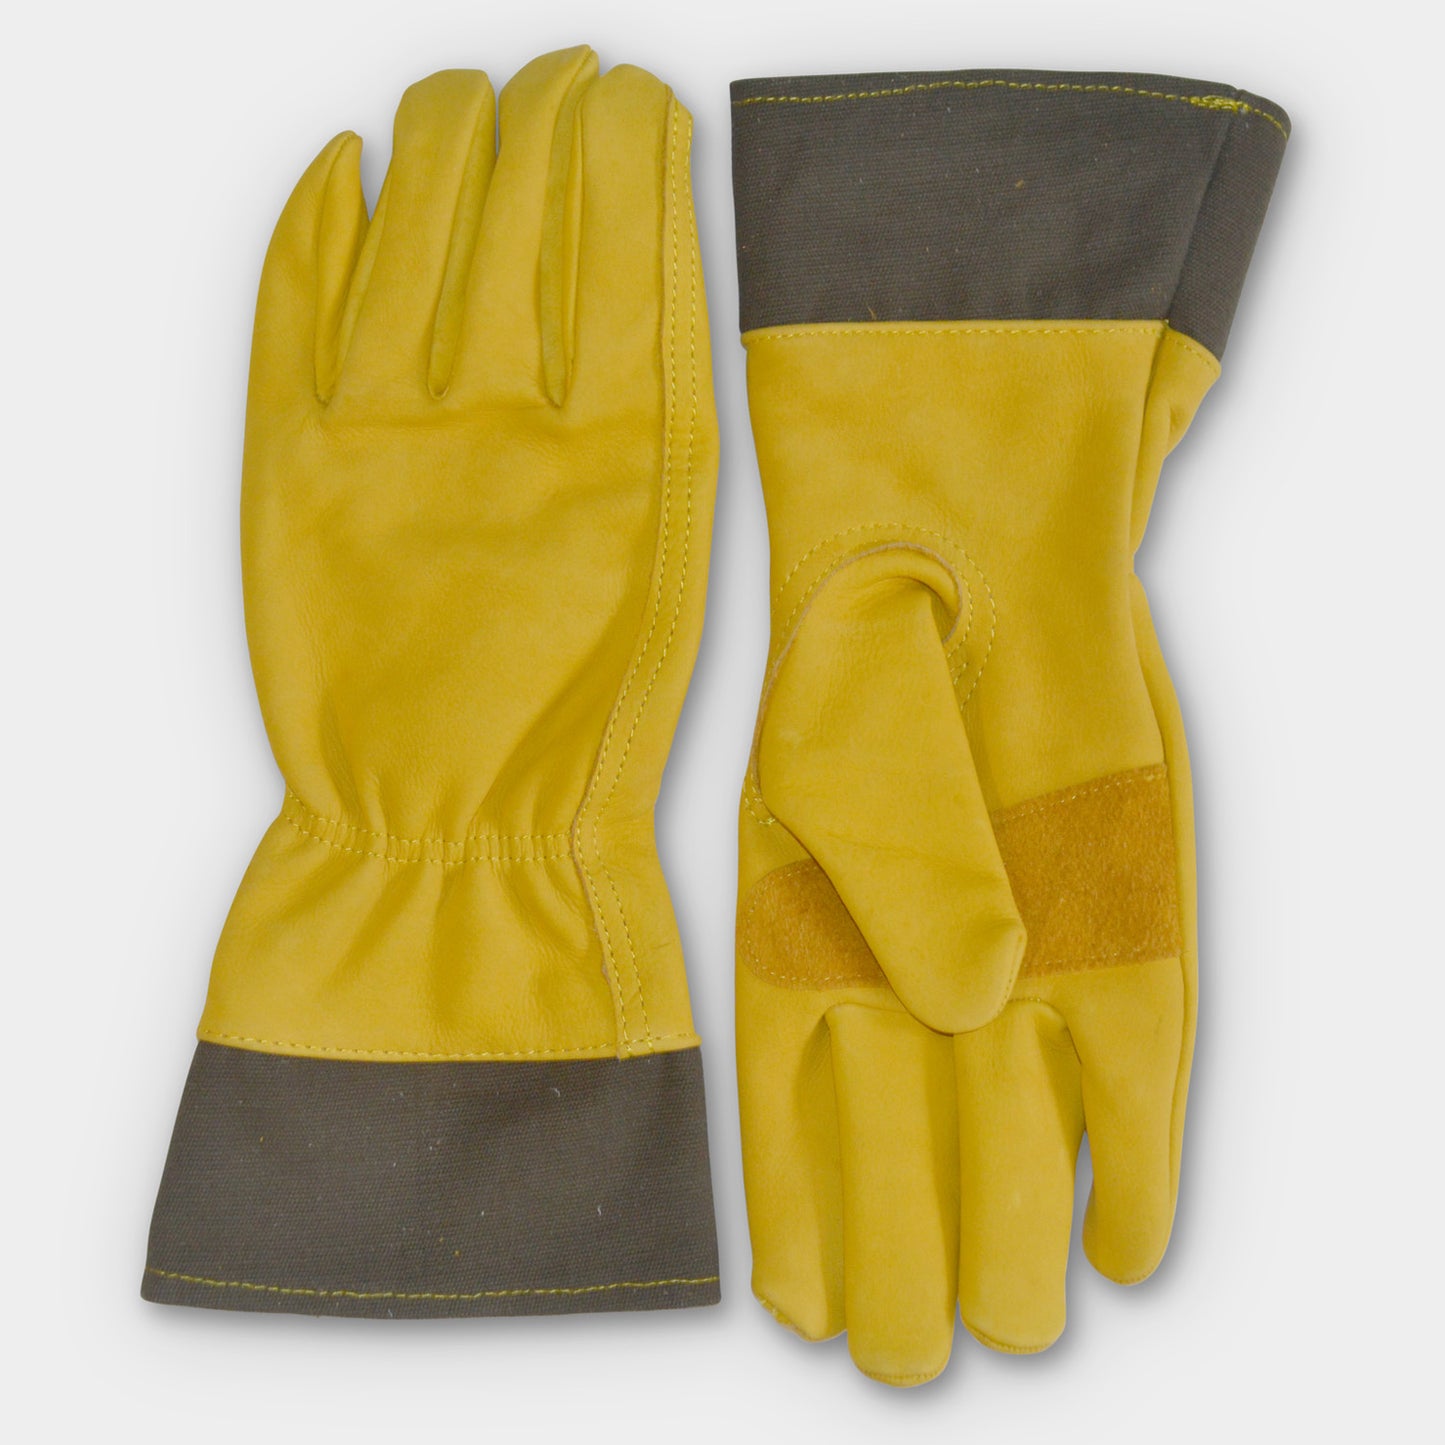 Leather Gauntlet Work Gloves